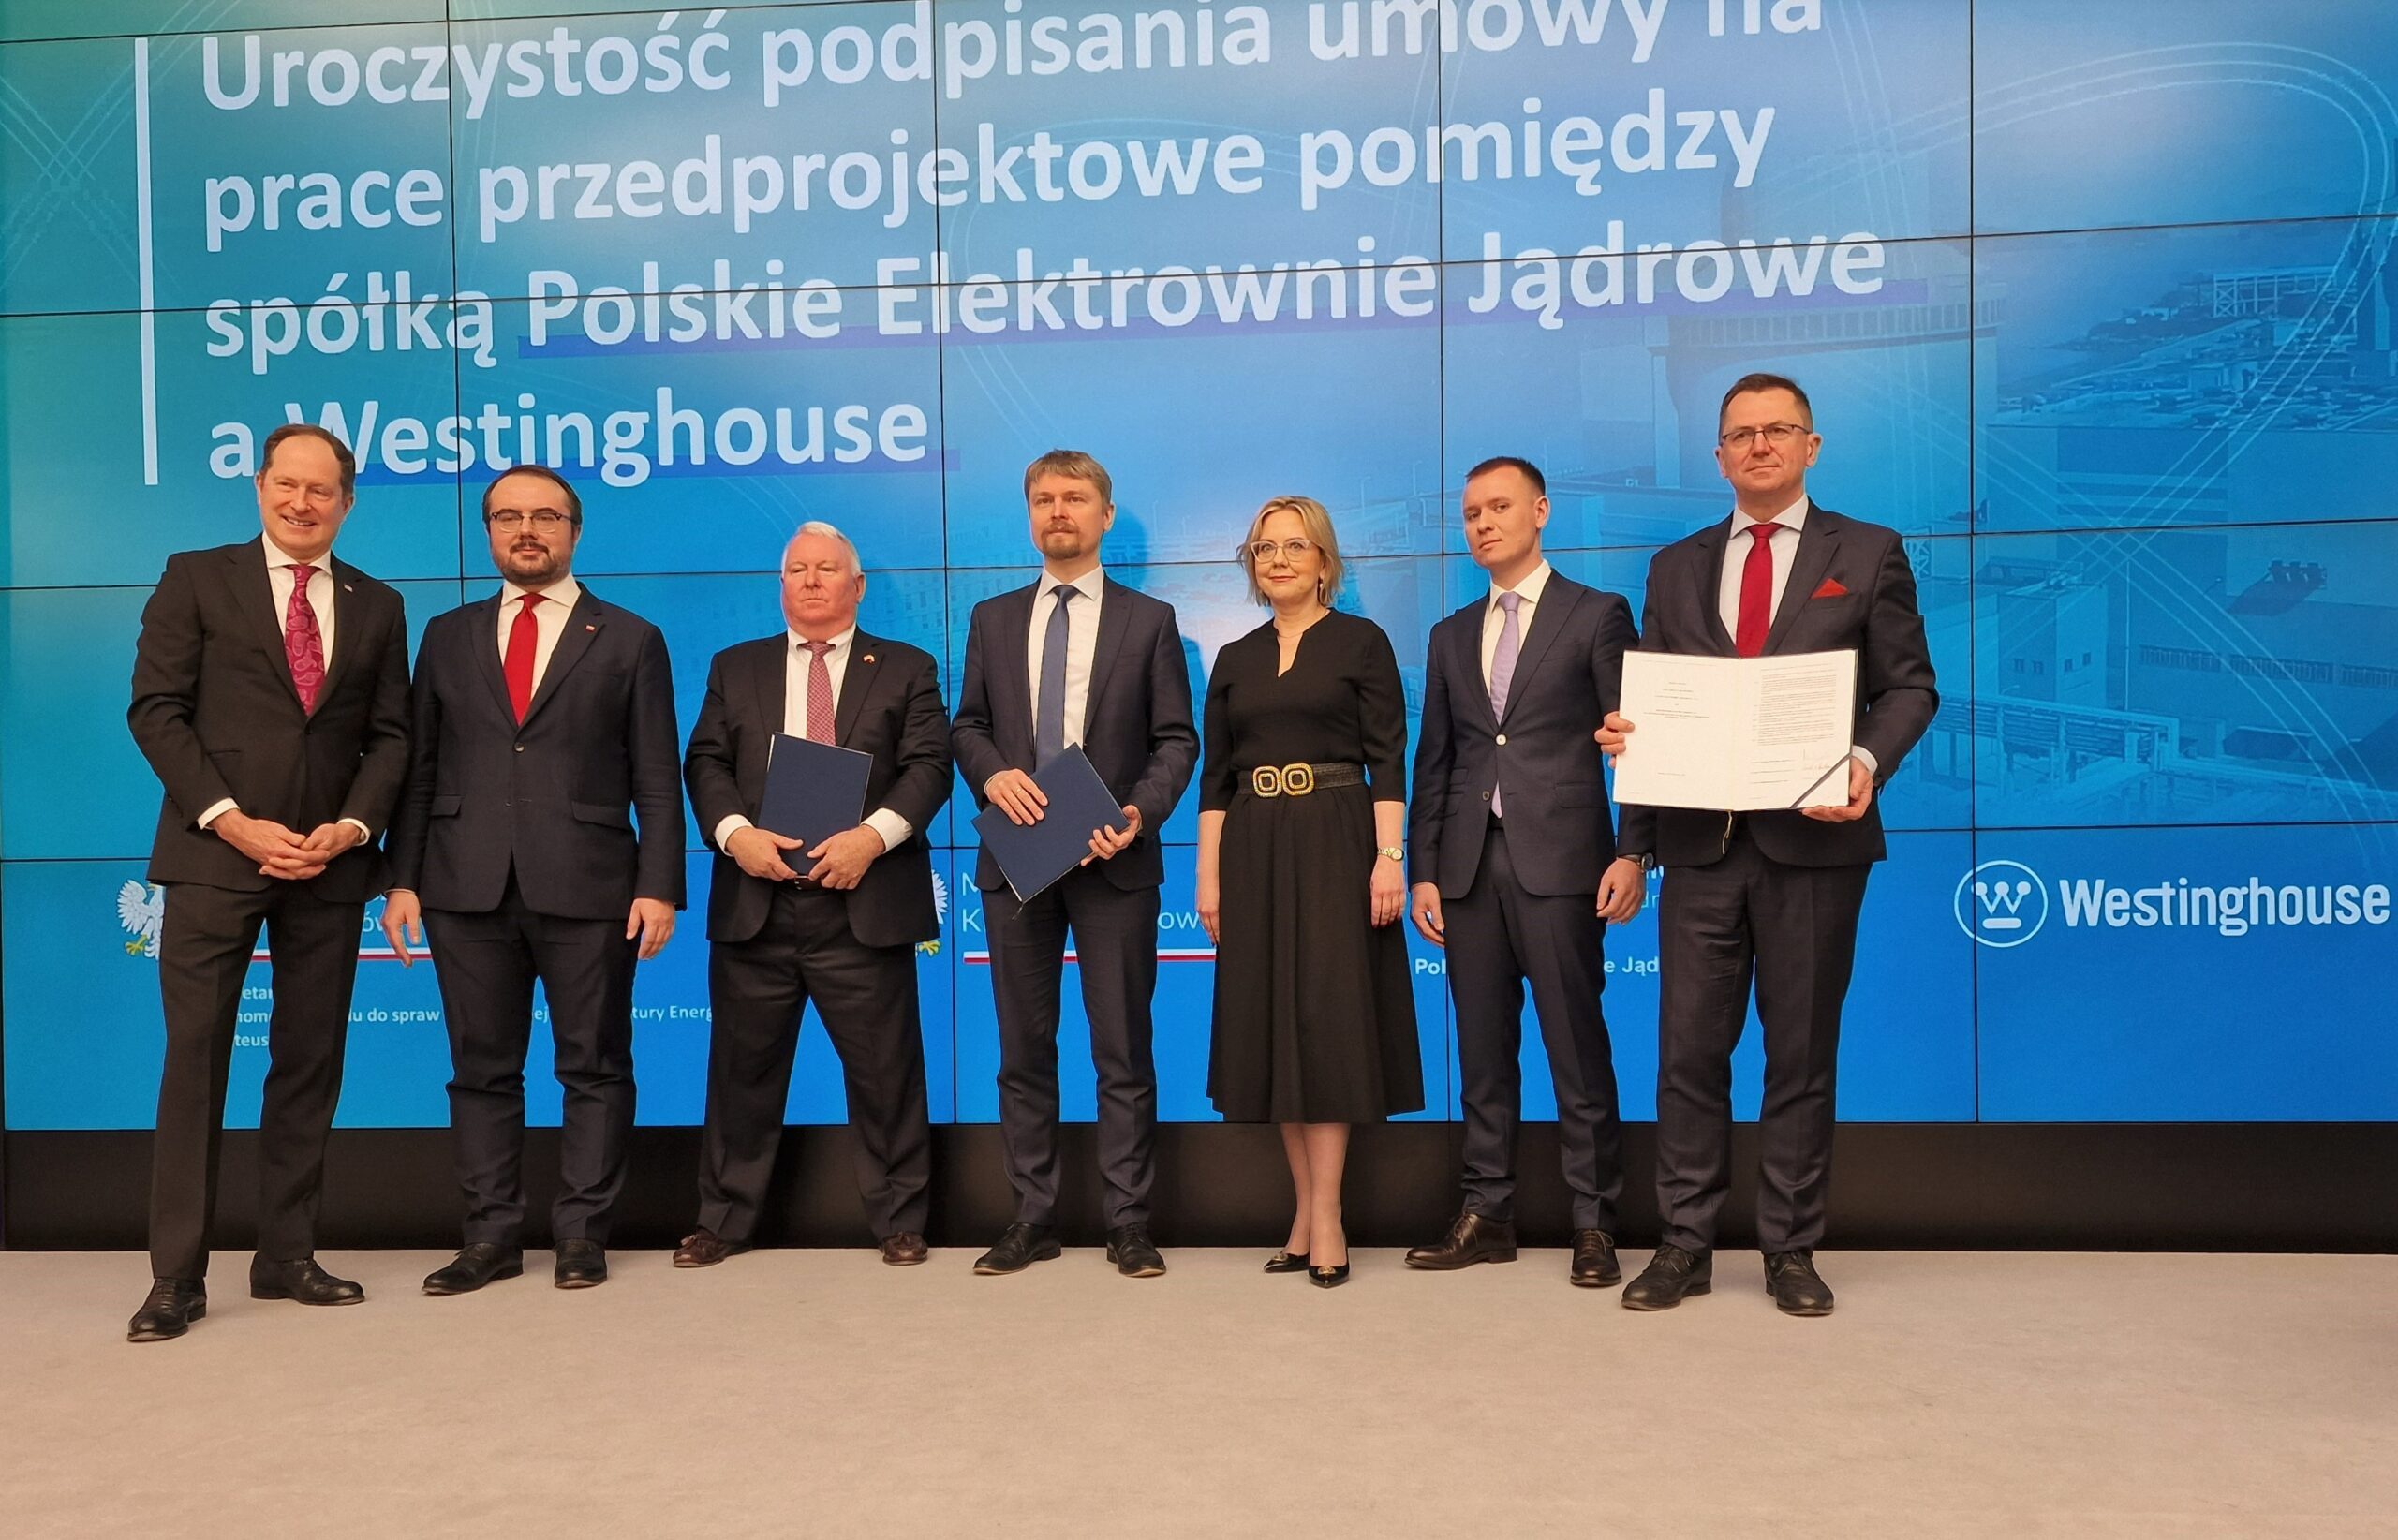 Podpisanie umowy przedprojektowej przez Polskie Elektrownie Jądrowe i Westinghouse. Fot. PEJ.